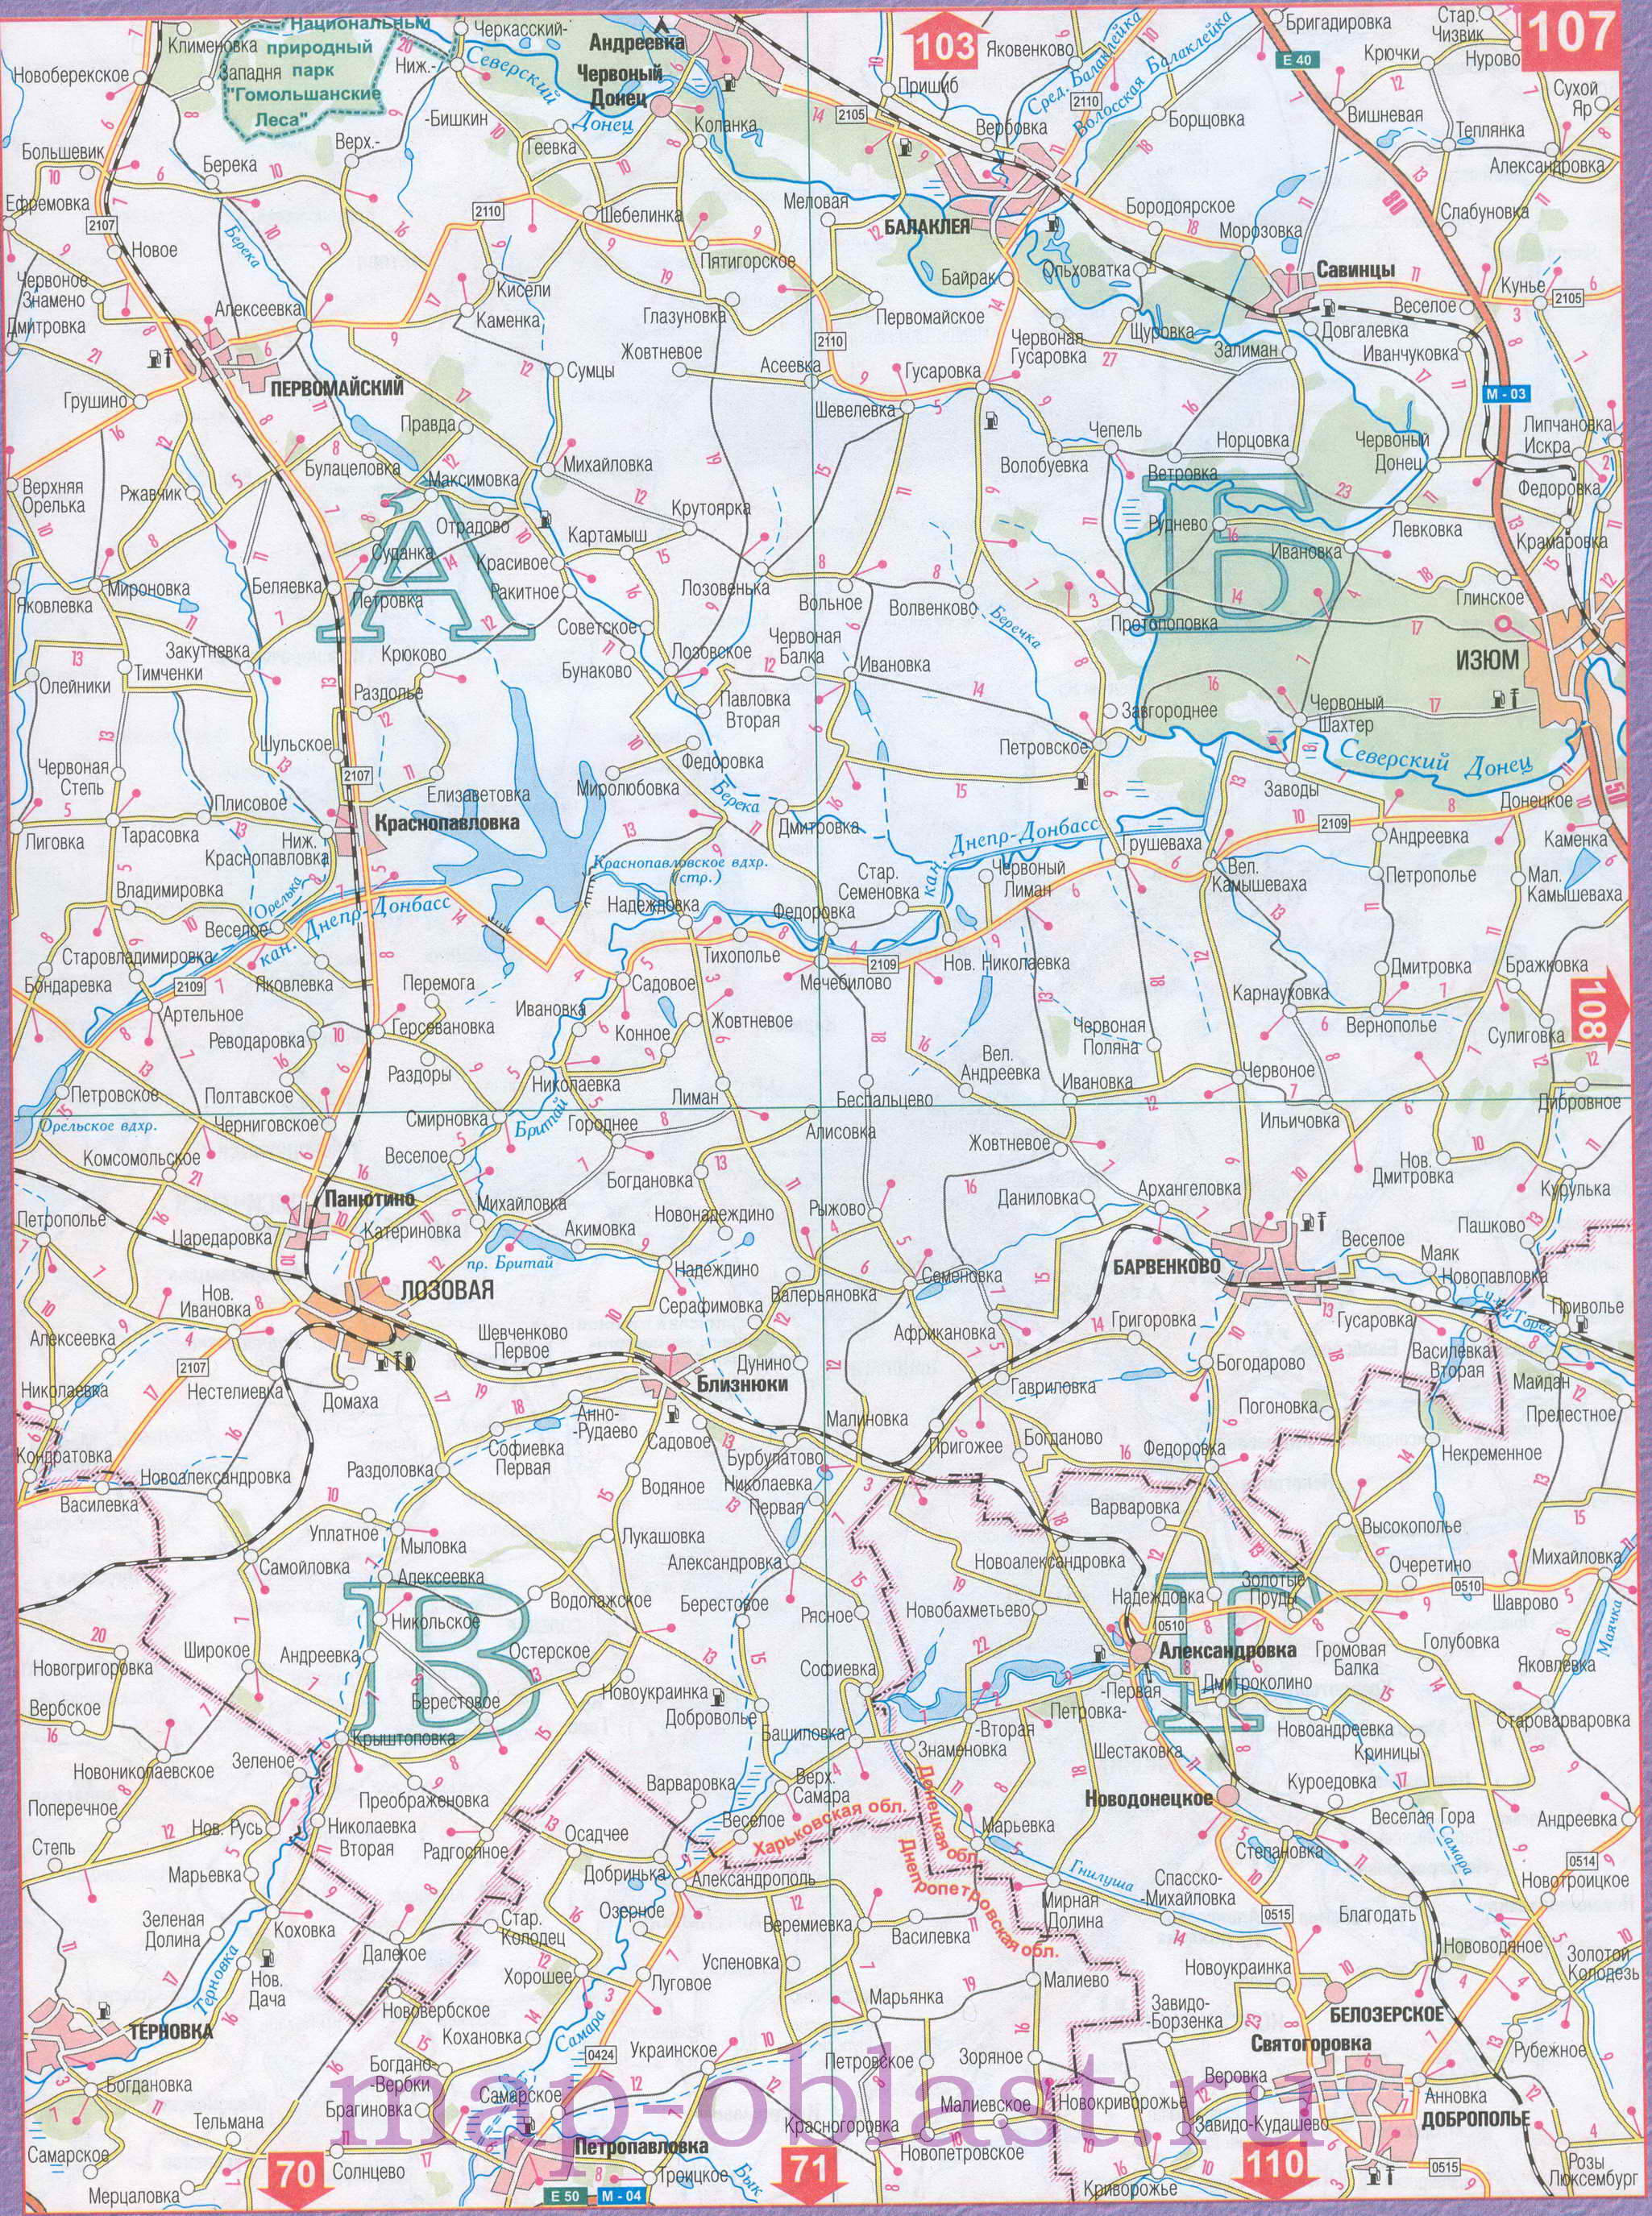 Автомобильная карта Восточной Украины - Харьковская область. Большая подробная карта Харьковской области, B1 - 